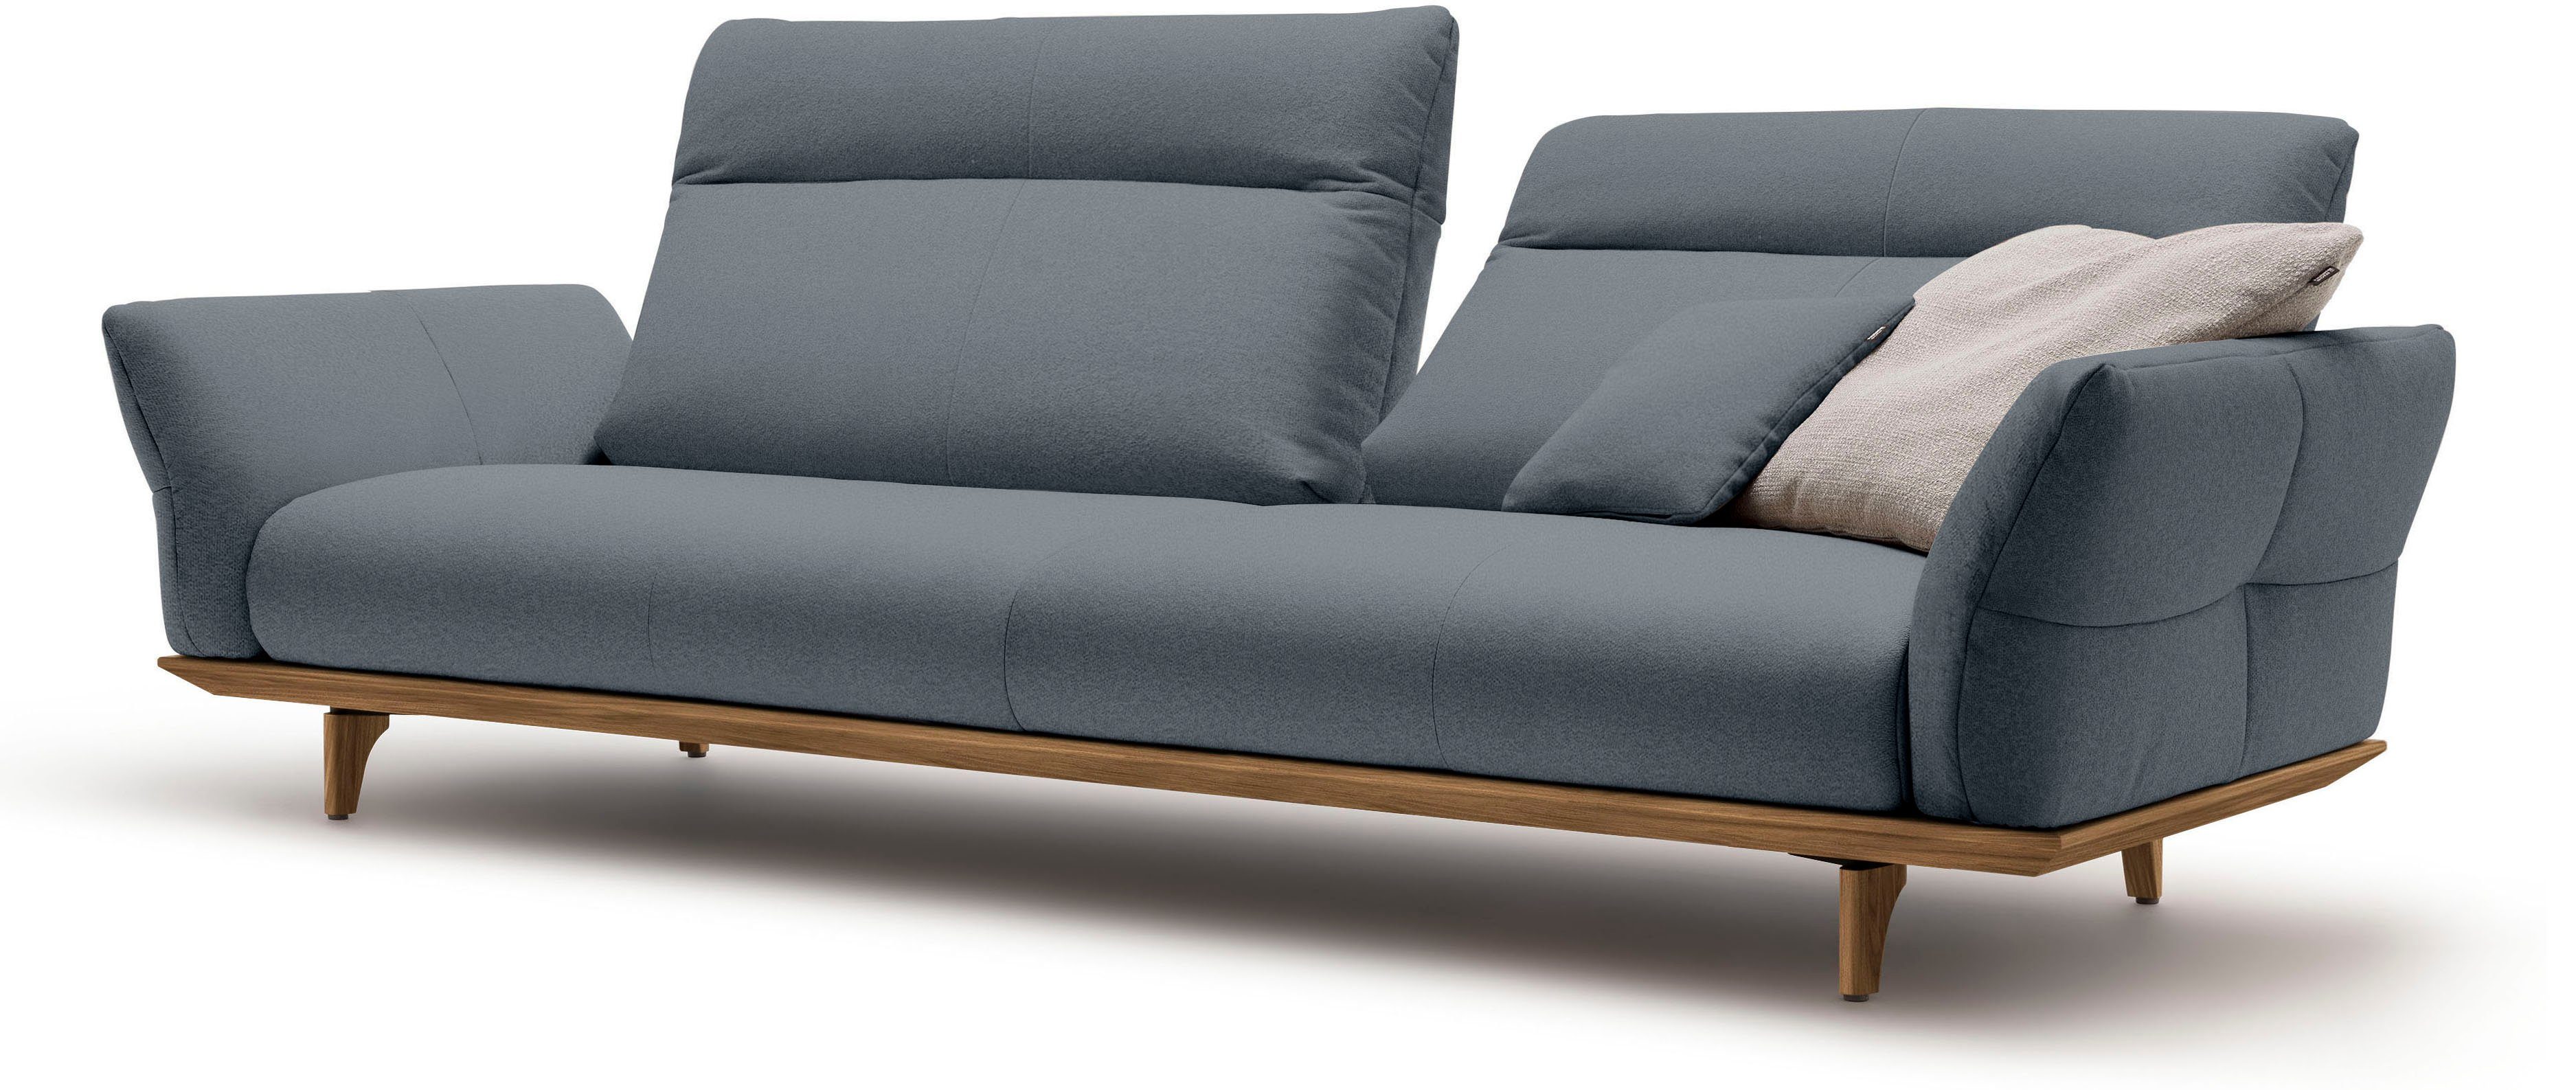 4-Sitzer sofa Breite 248 in Füße hs.460, hülsta Nussbaum, Sockel Nussbaum, cm